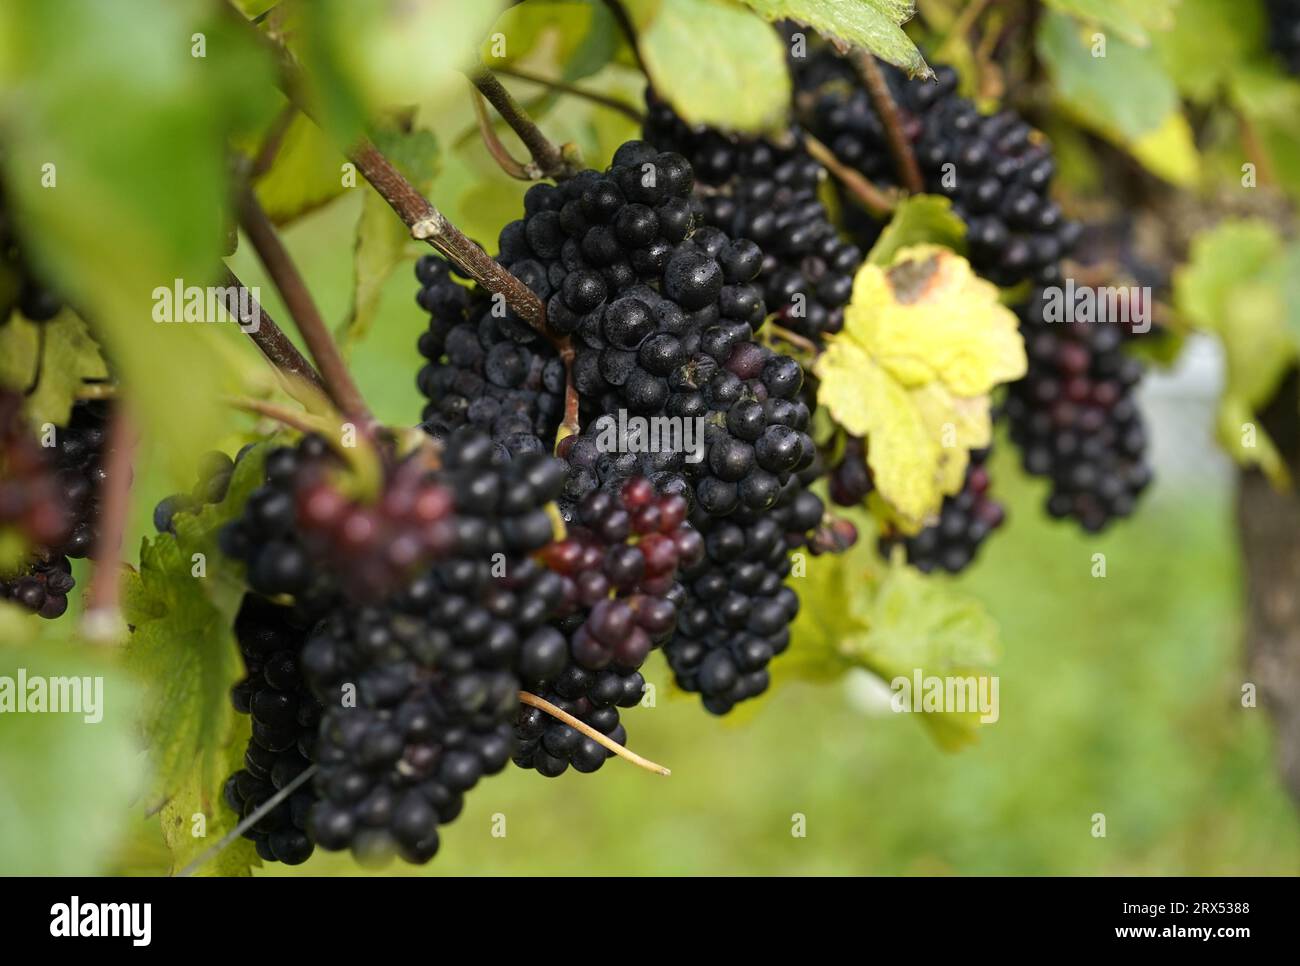 Photo de dossier datée du 12/10/21 de raisins Pinot Meunier sur une vigne, car cela a été une bonne année pour la récolte du vin britannique, selon la Royal Horticultural Society (RHS). Le changement climatique prolonge la saison de croissance et provoque un boom pour l'industrie vinicole britannique. Banque D'Images